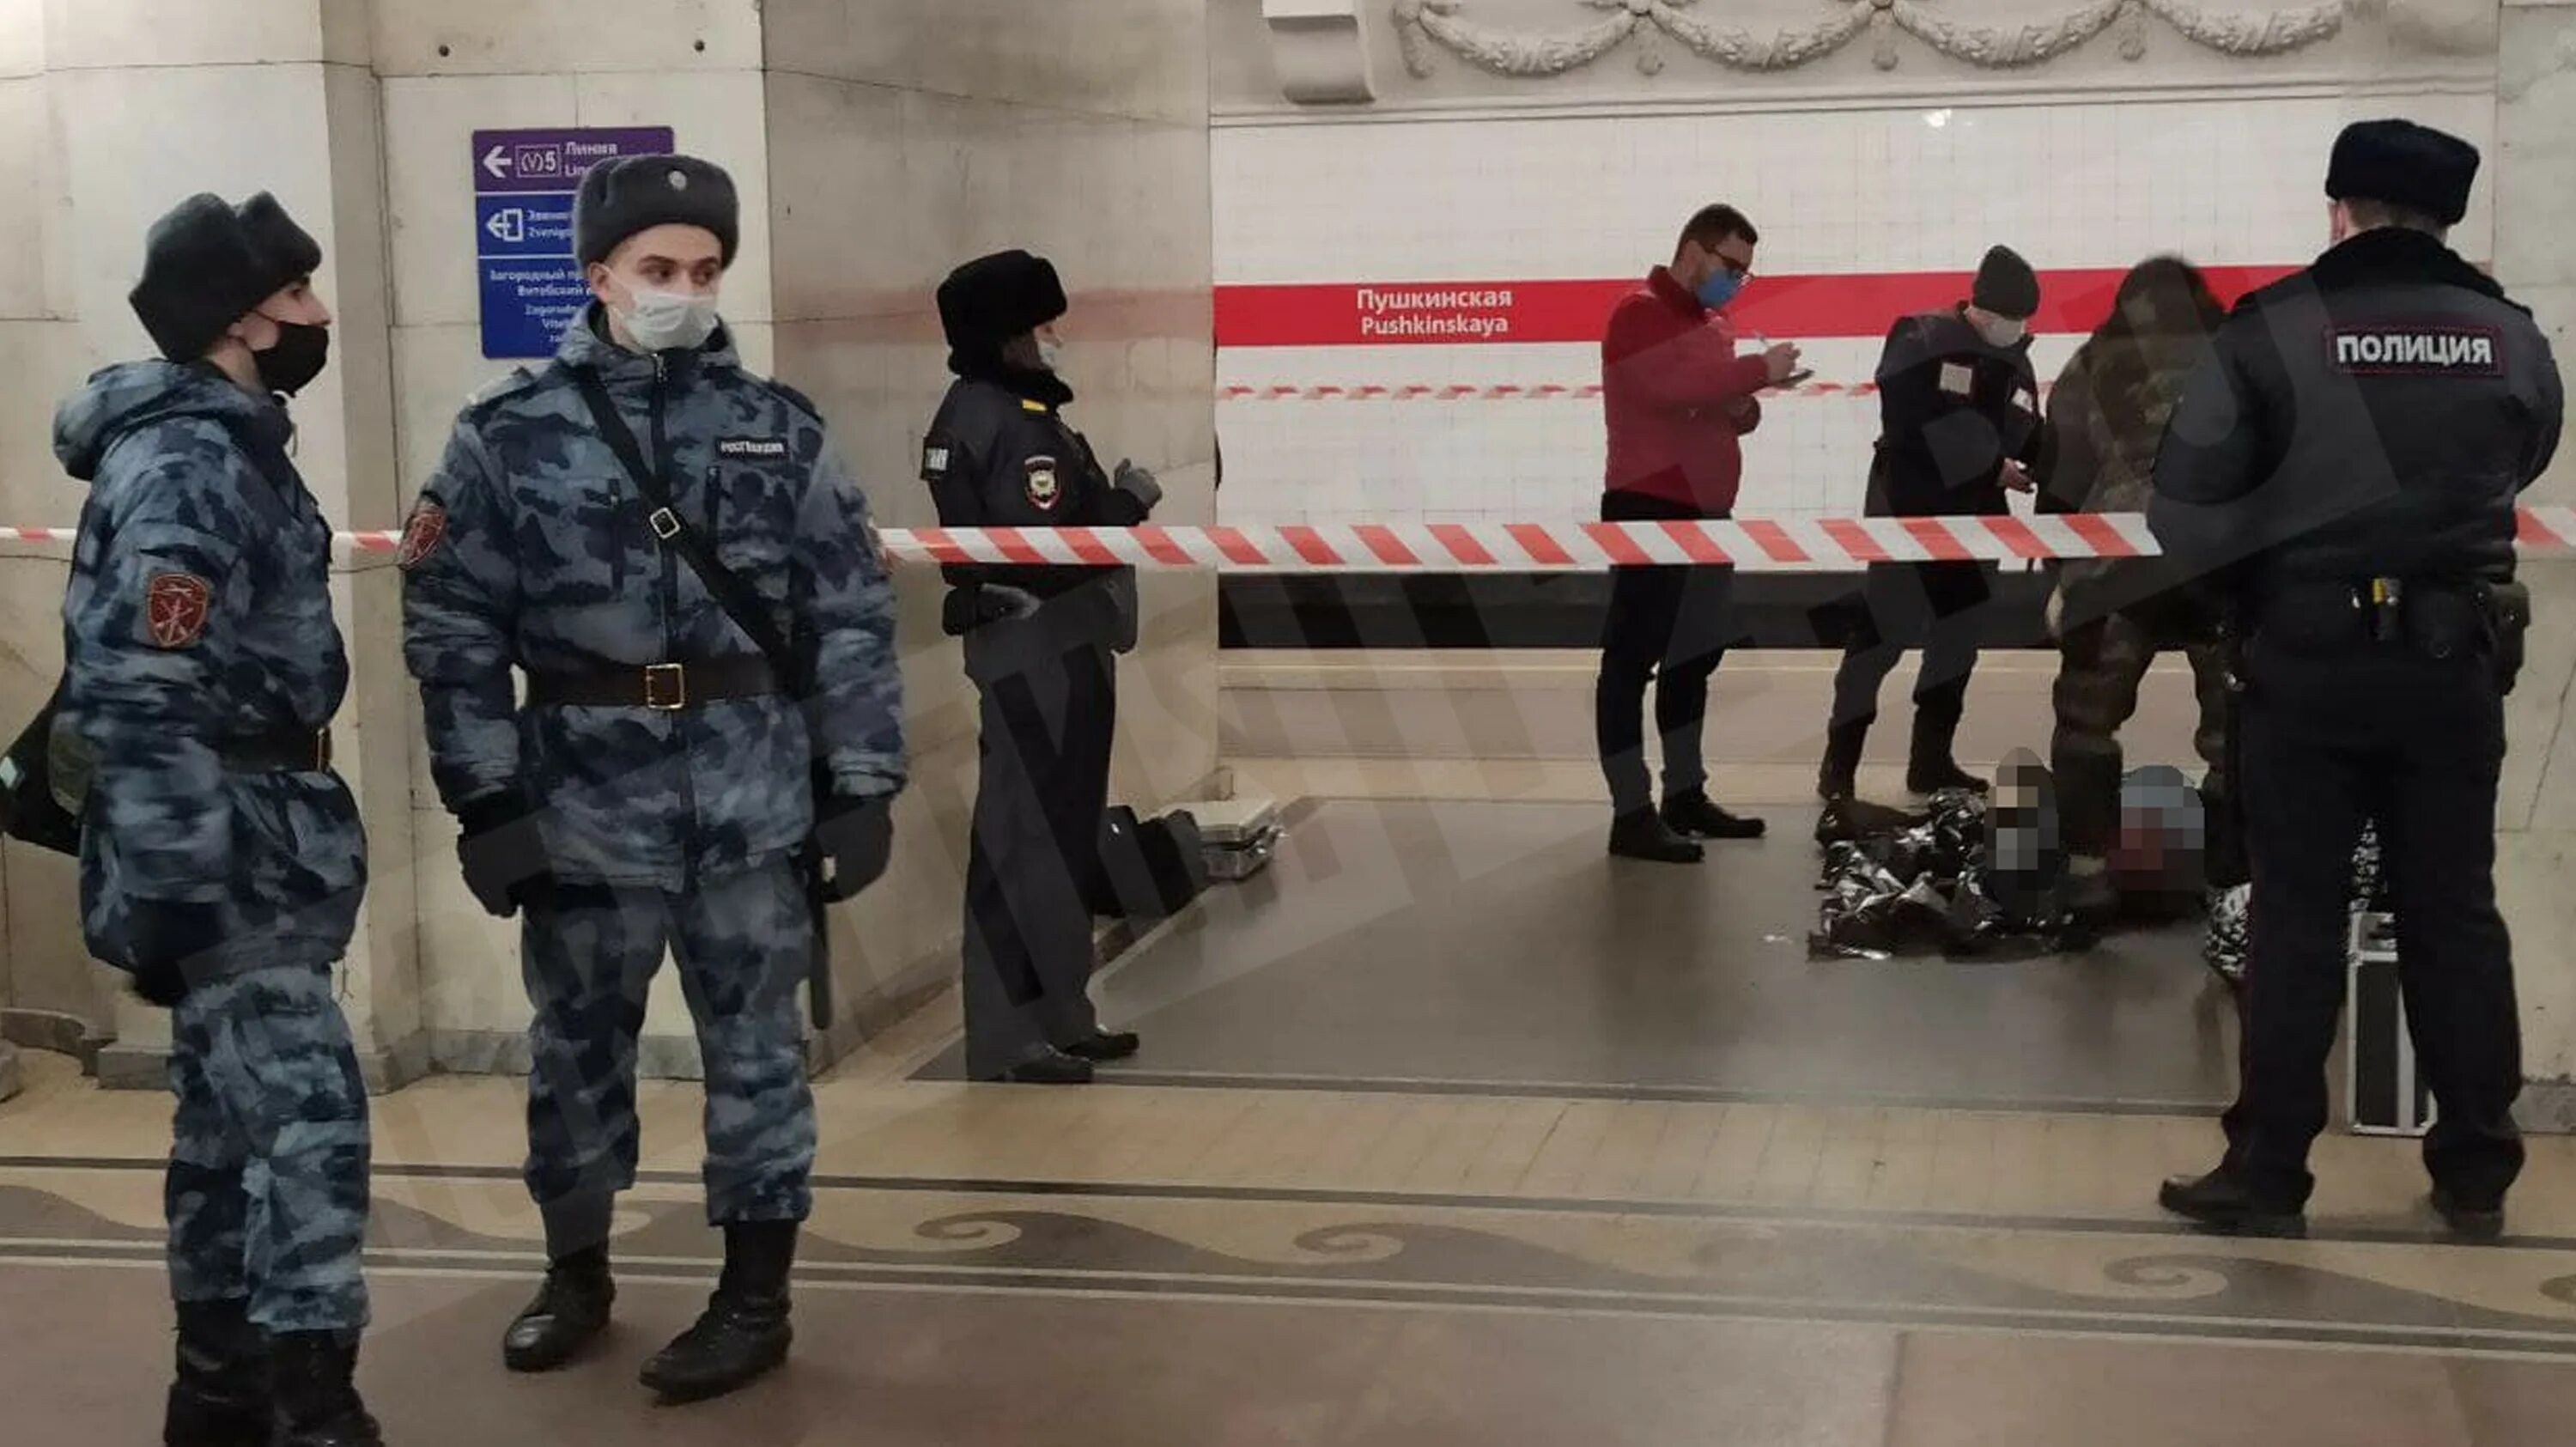 Смерть в метро на платформе в СПБ. Взрывы на красной ветке. Человек упал в метро Санкт-Петербурга.